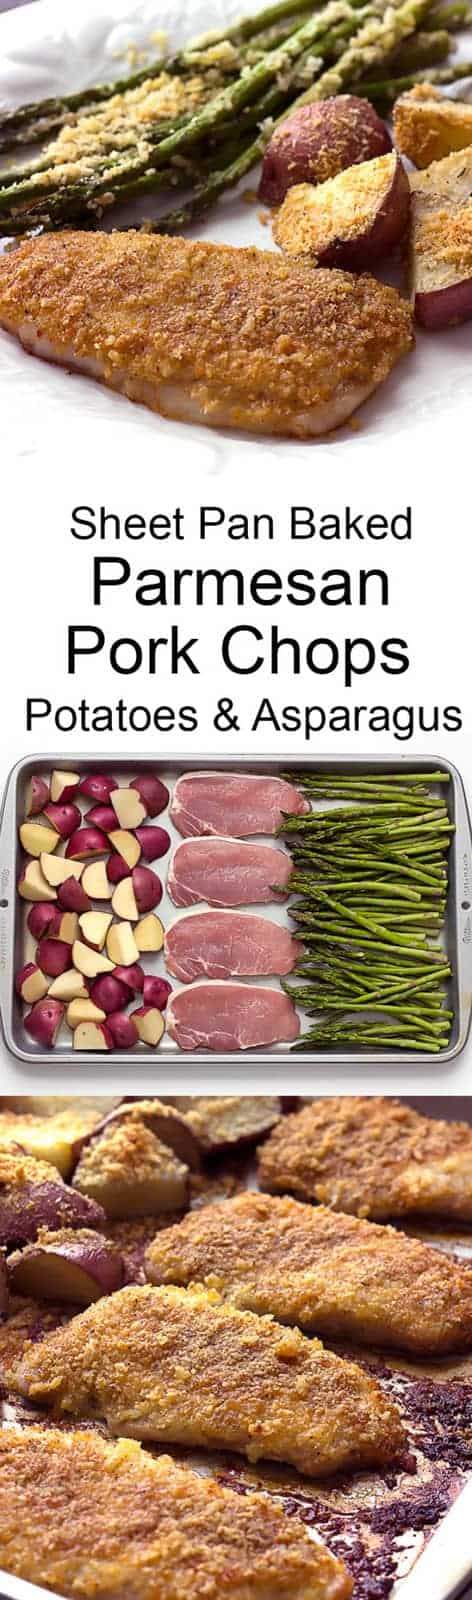 3 image collage showing making Sheet Pan Baked Parmesan Pork Chops Potatoes & Asparagus